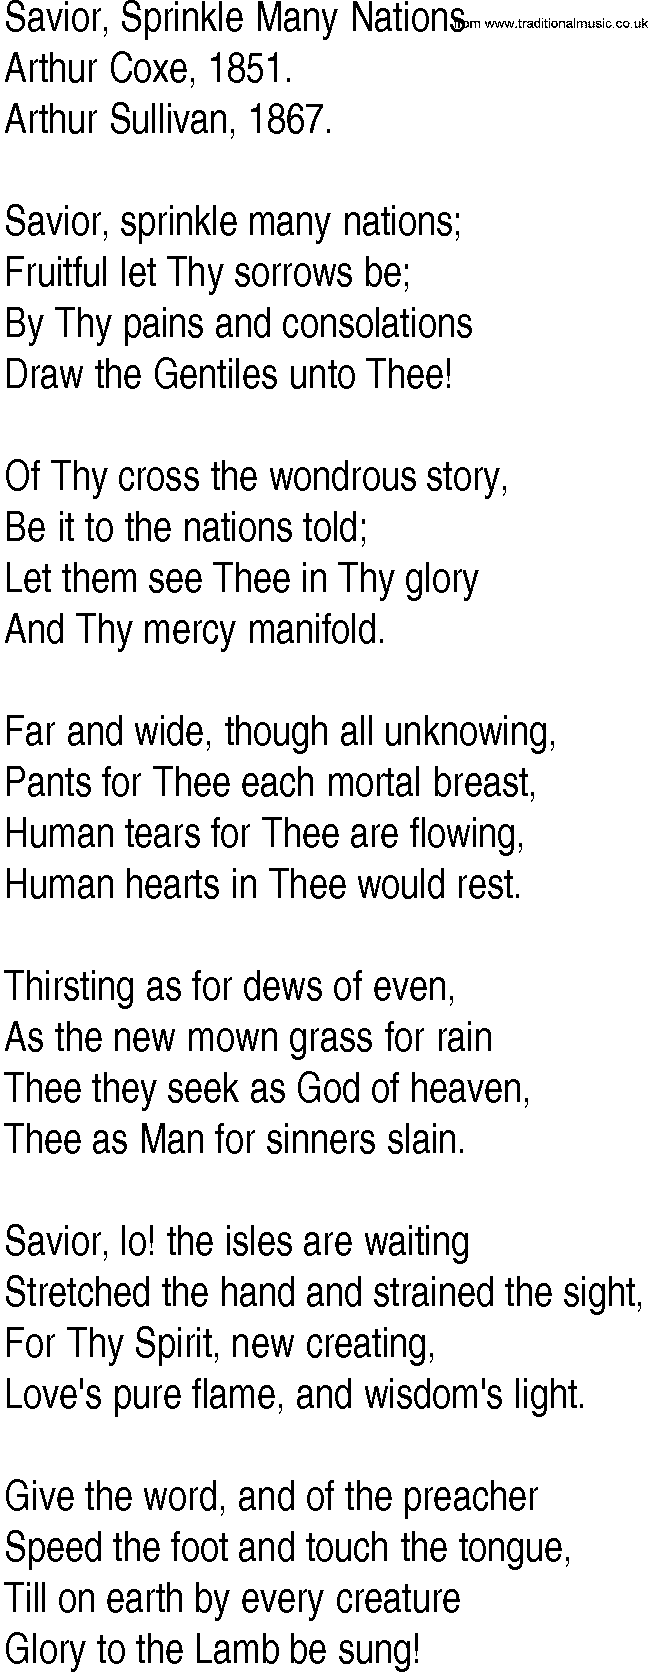 Hymn and Gospel Song: Savior, Sprinkle Many Nations by Arthur Coxe lyrics